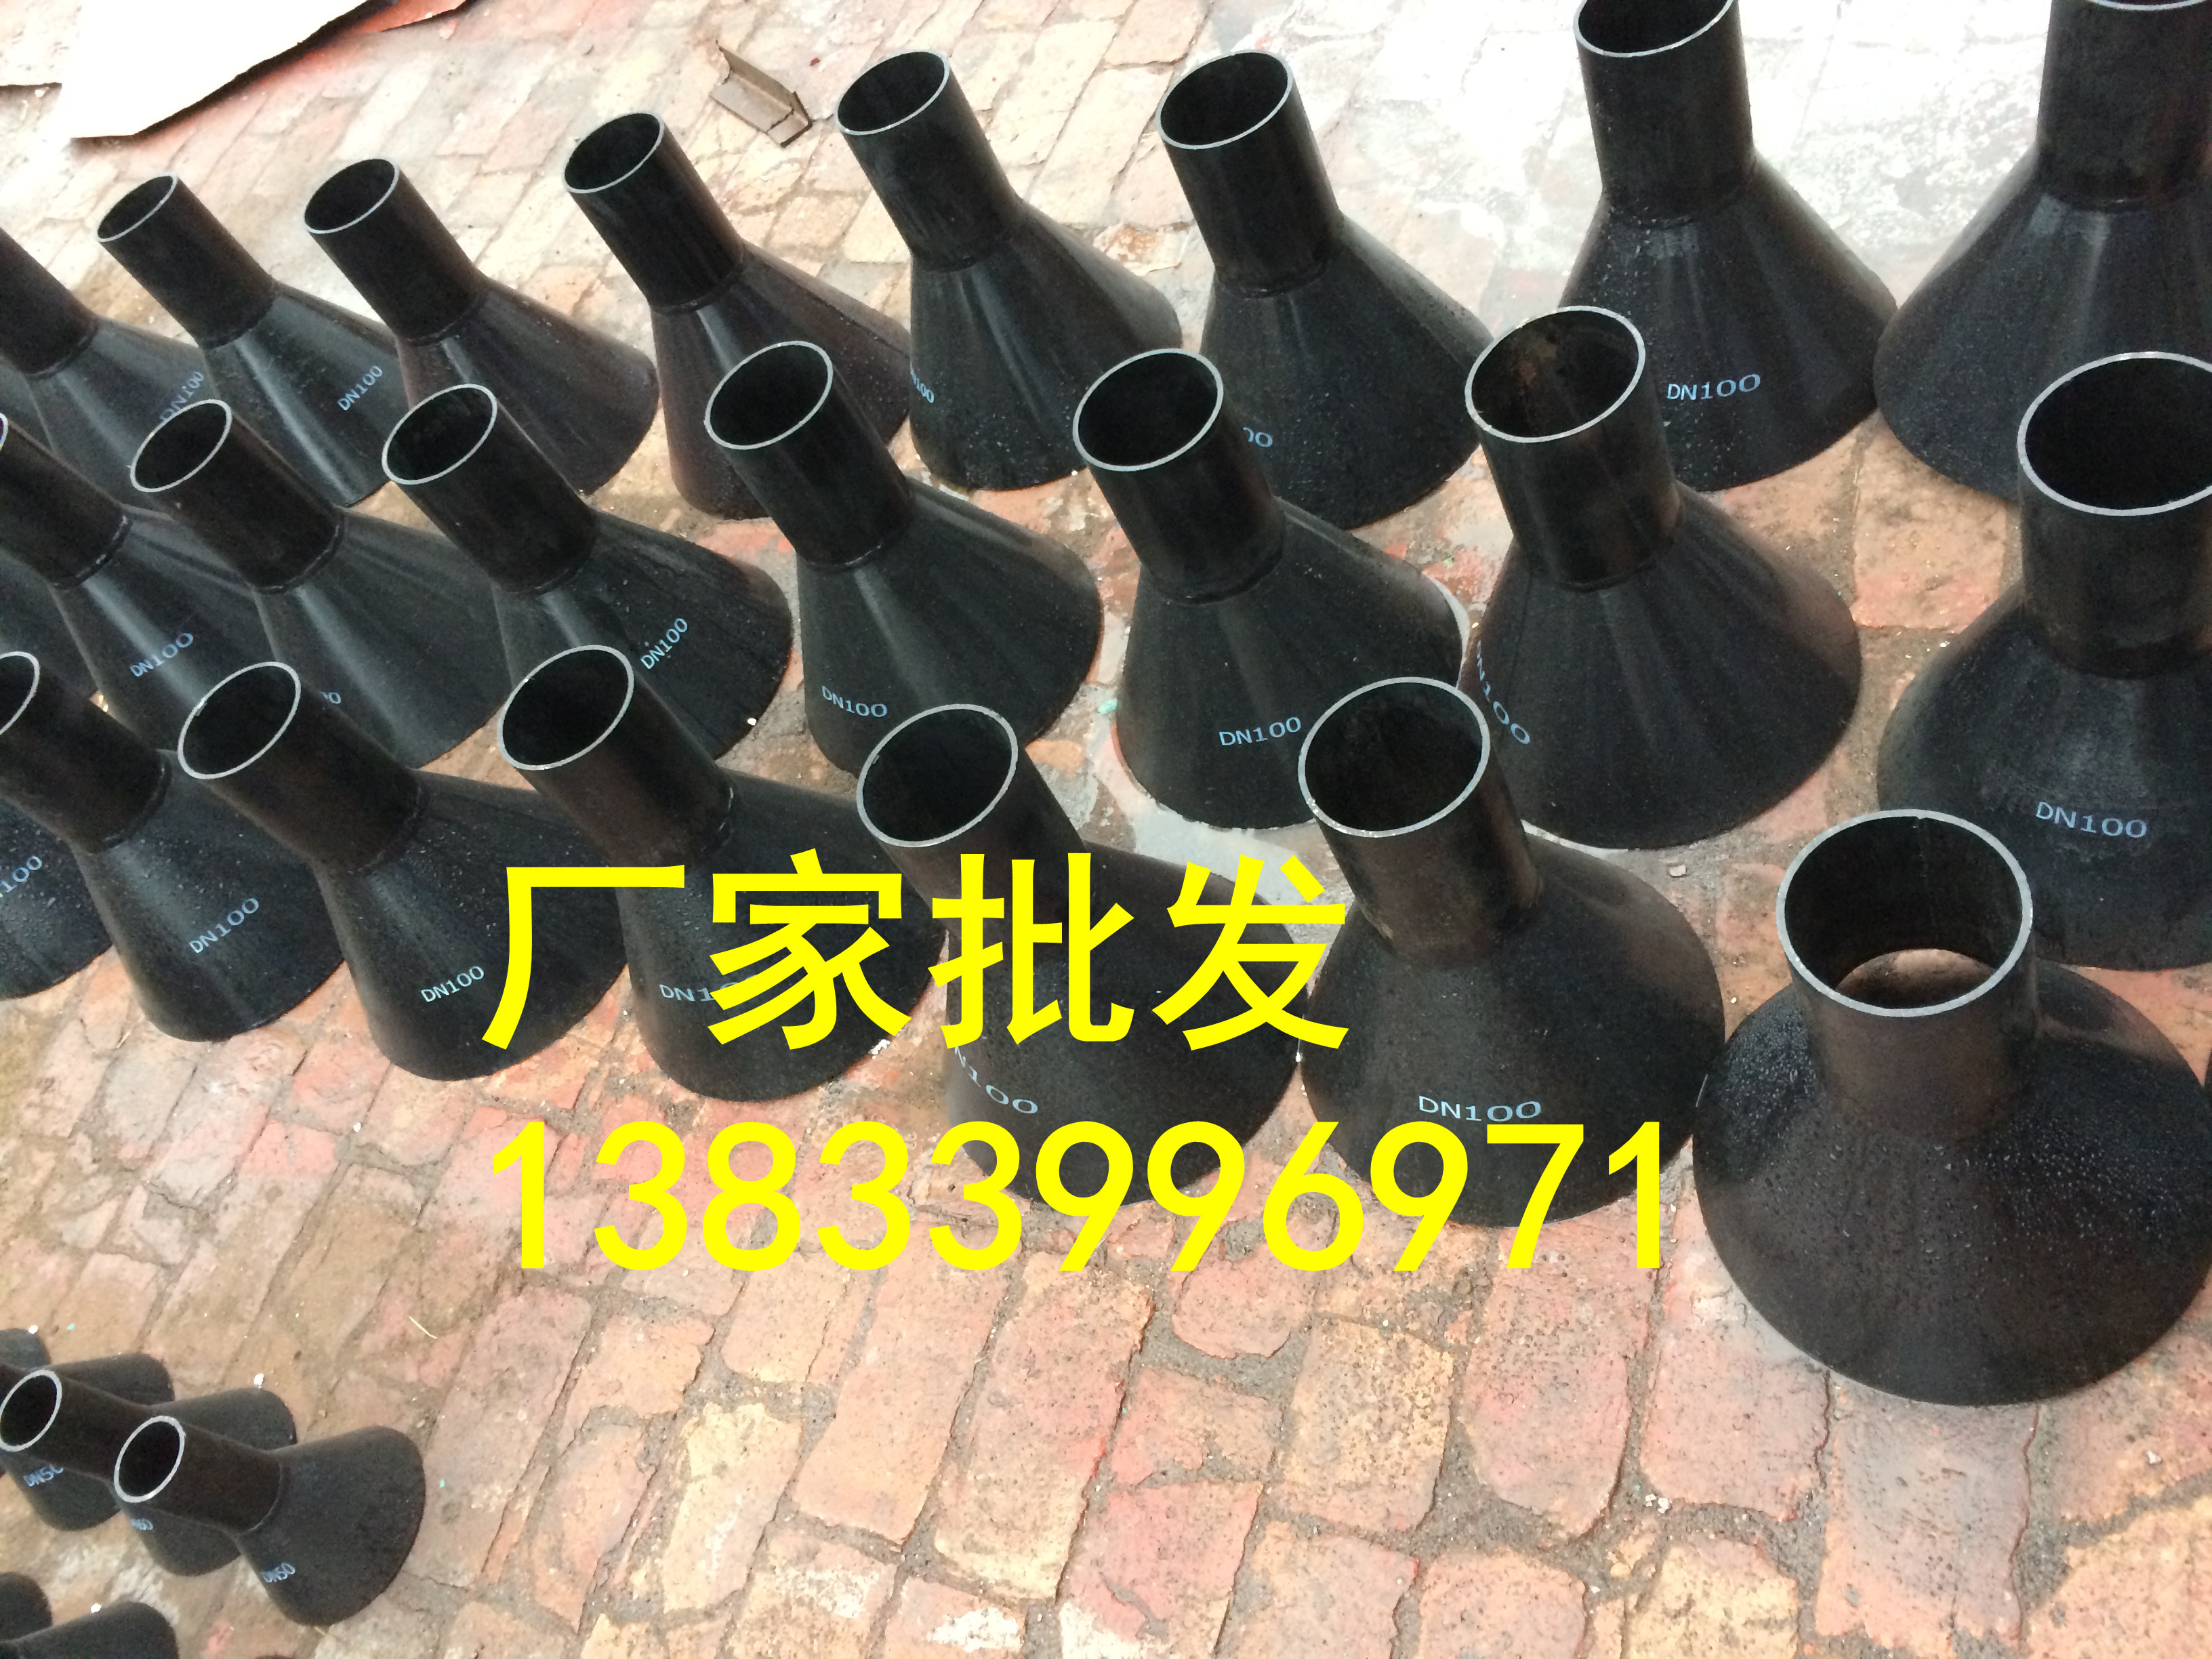 排水漏斗生产厂家 钢制排水漏斗DN32 04s301图集排水漏斗价格